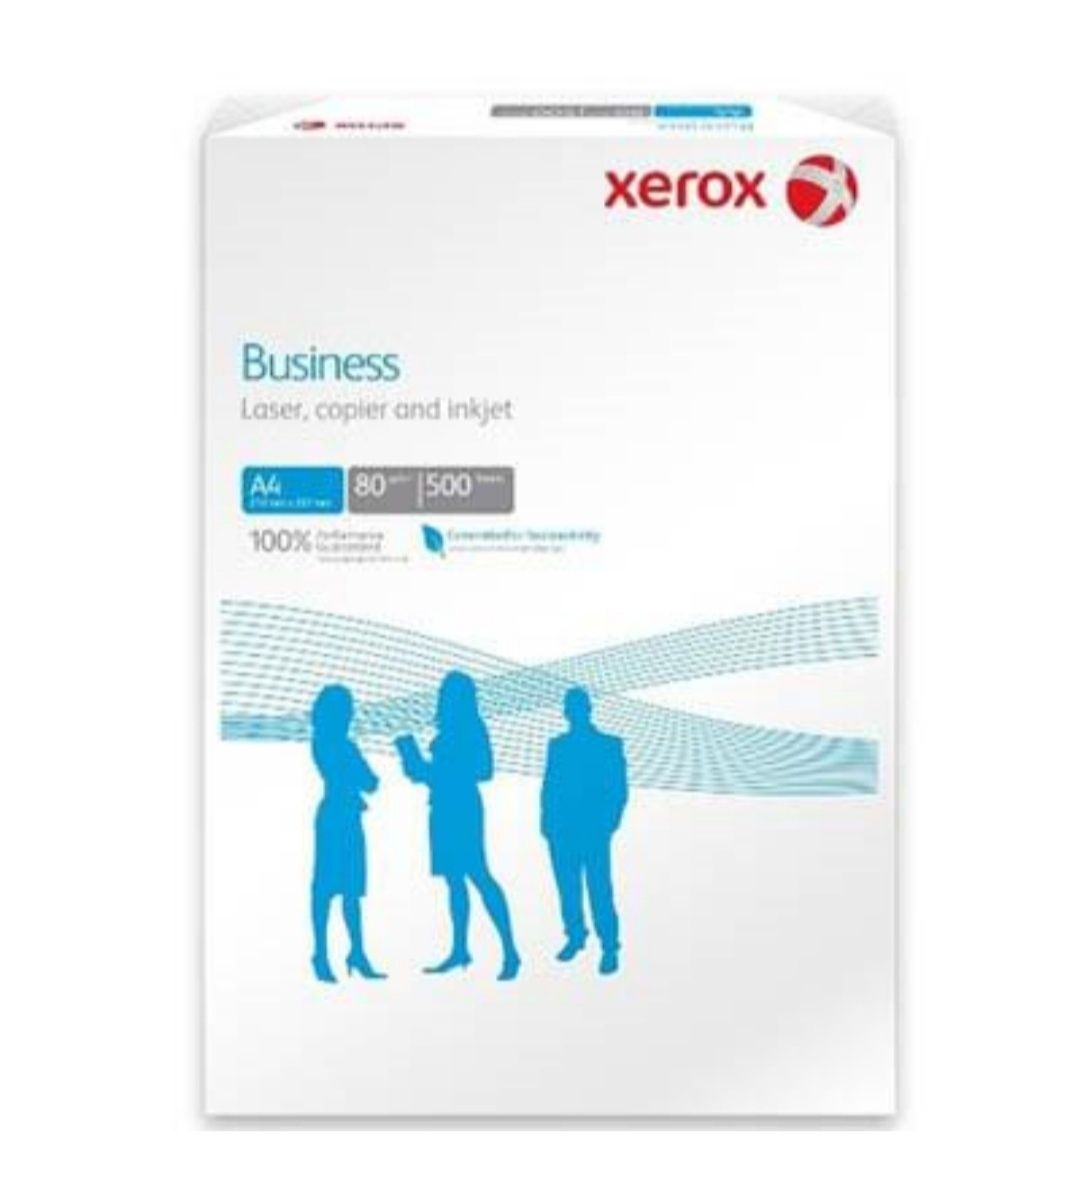 Бумага А-4 отличного качества Xerox Business, бесплатная доставка